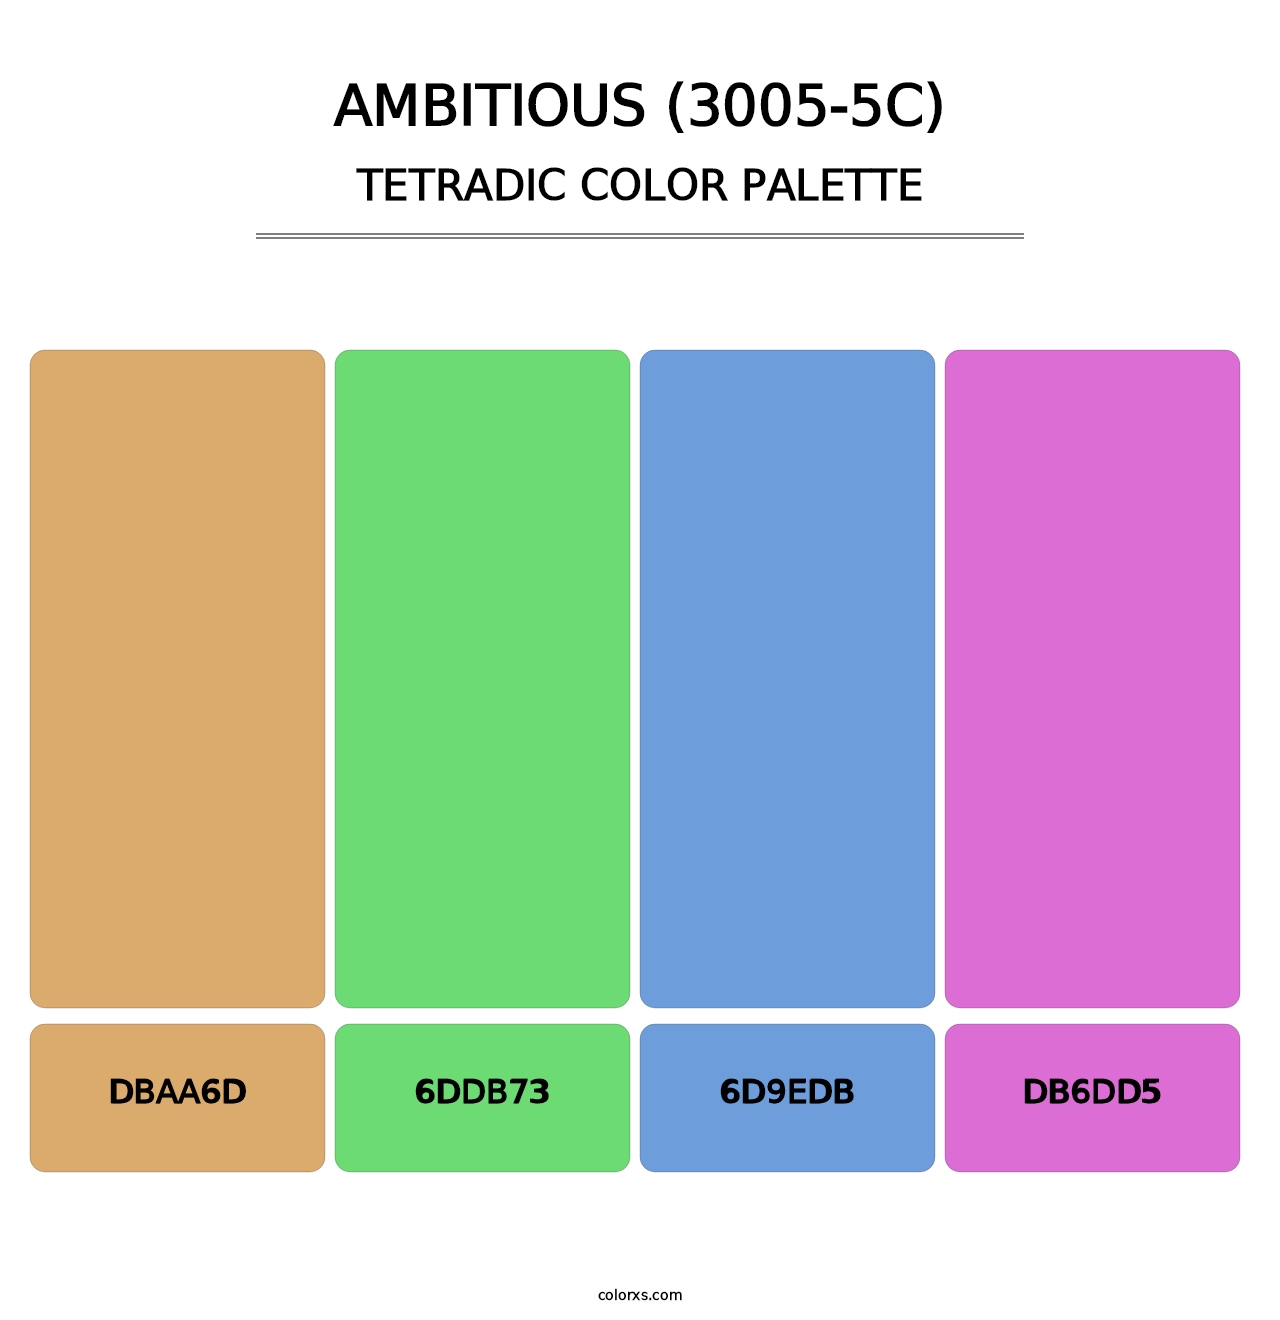 Ambitious (3005-5C) - Tetradic Color Palette